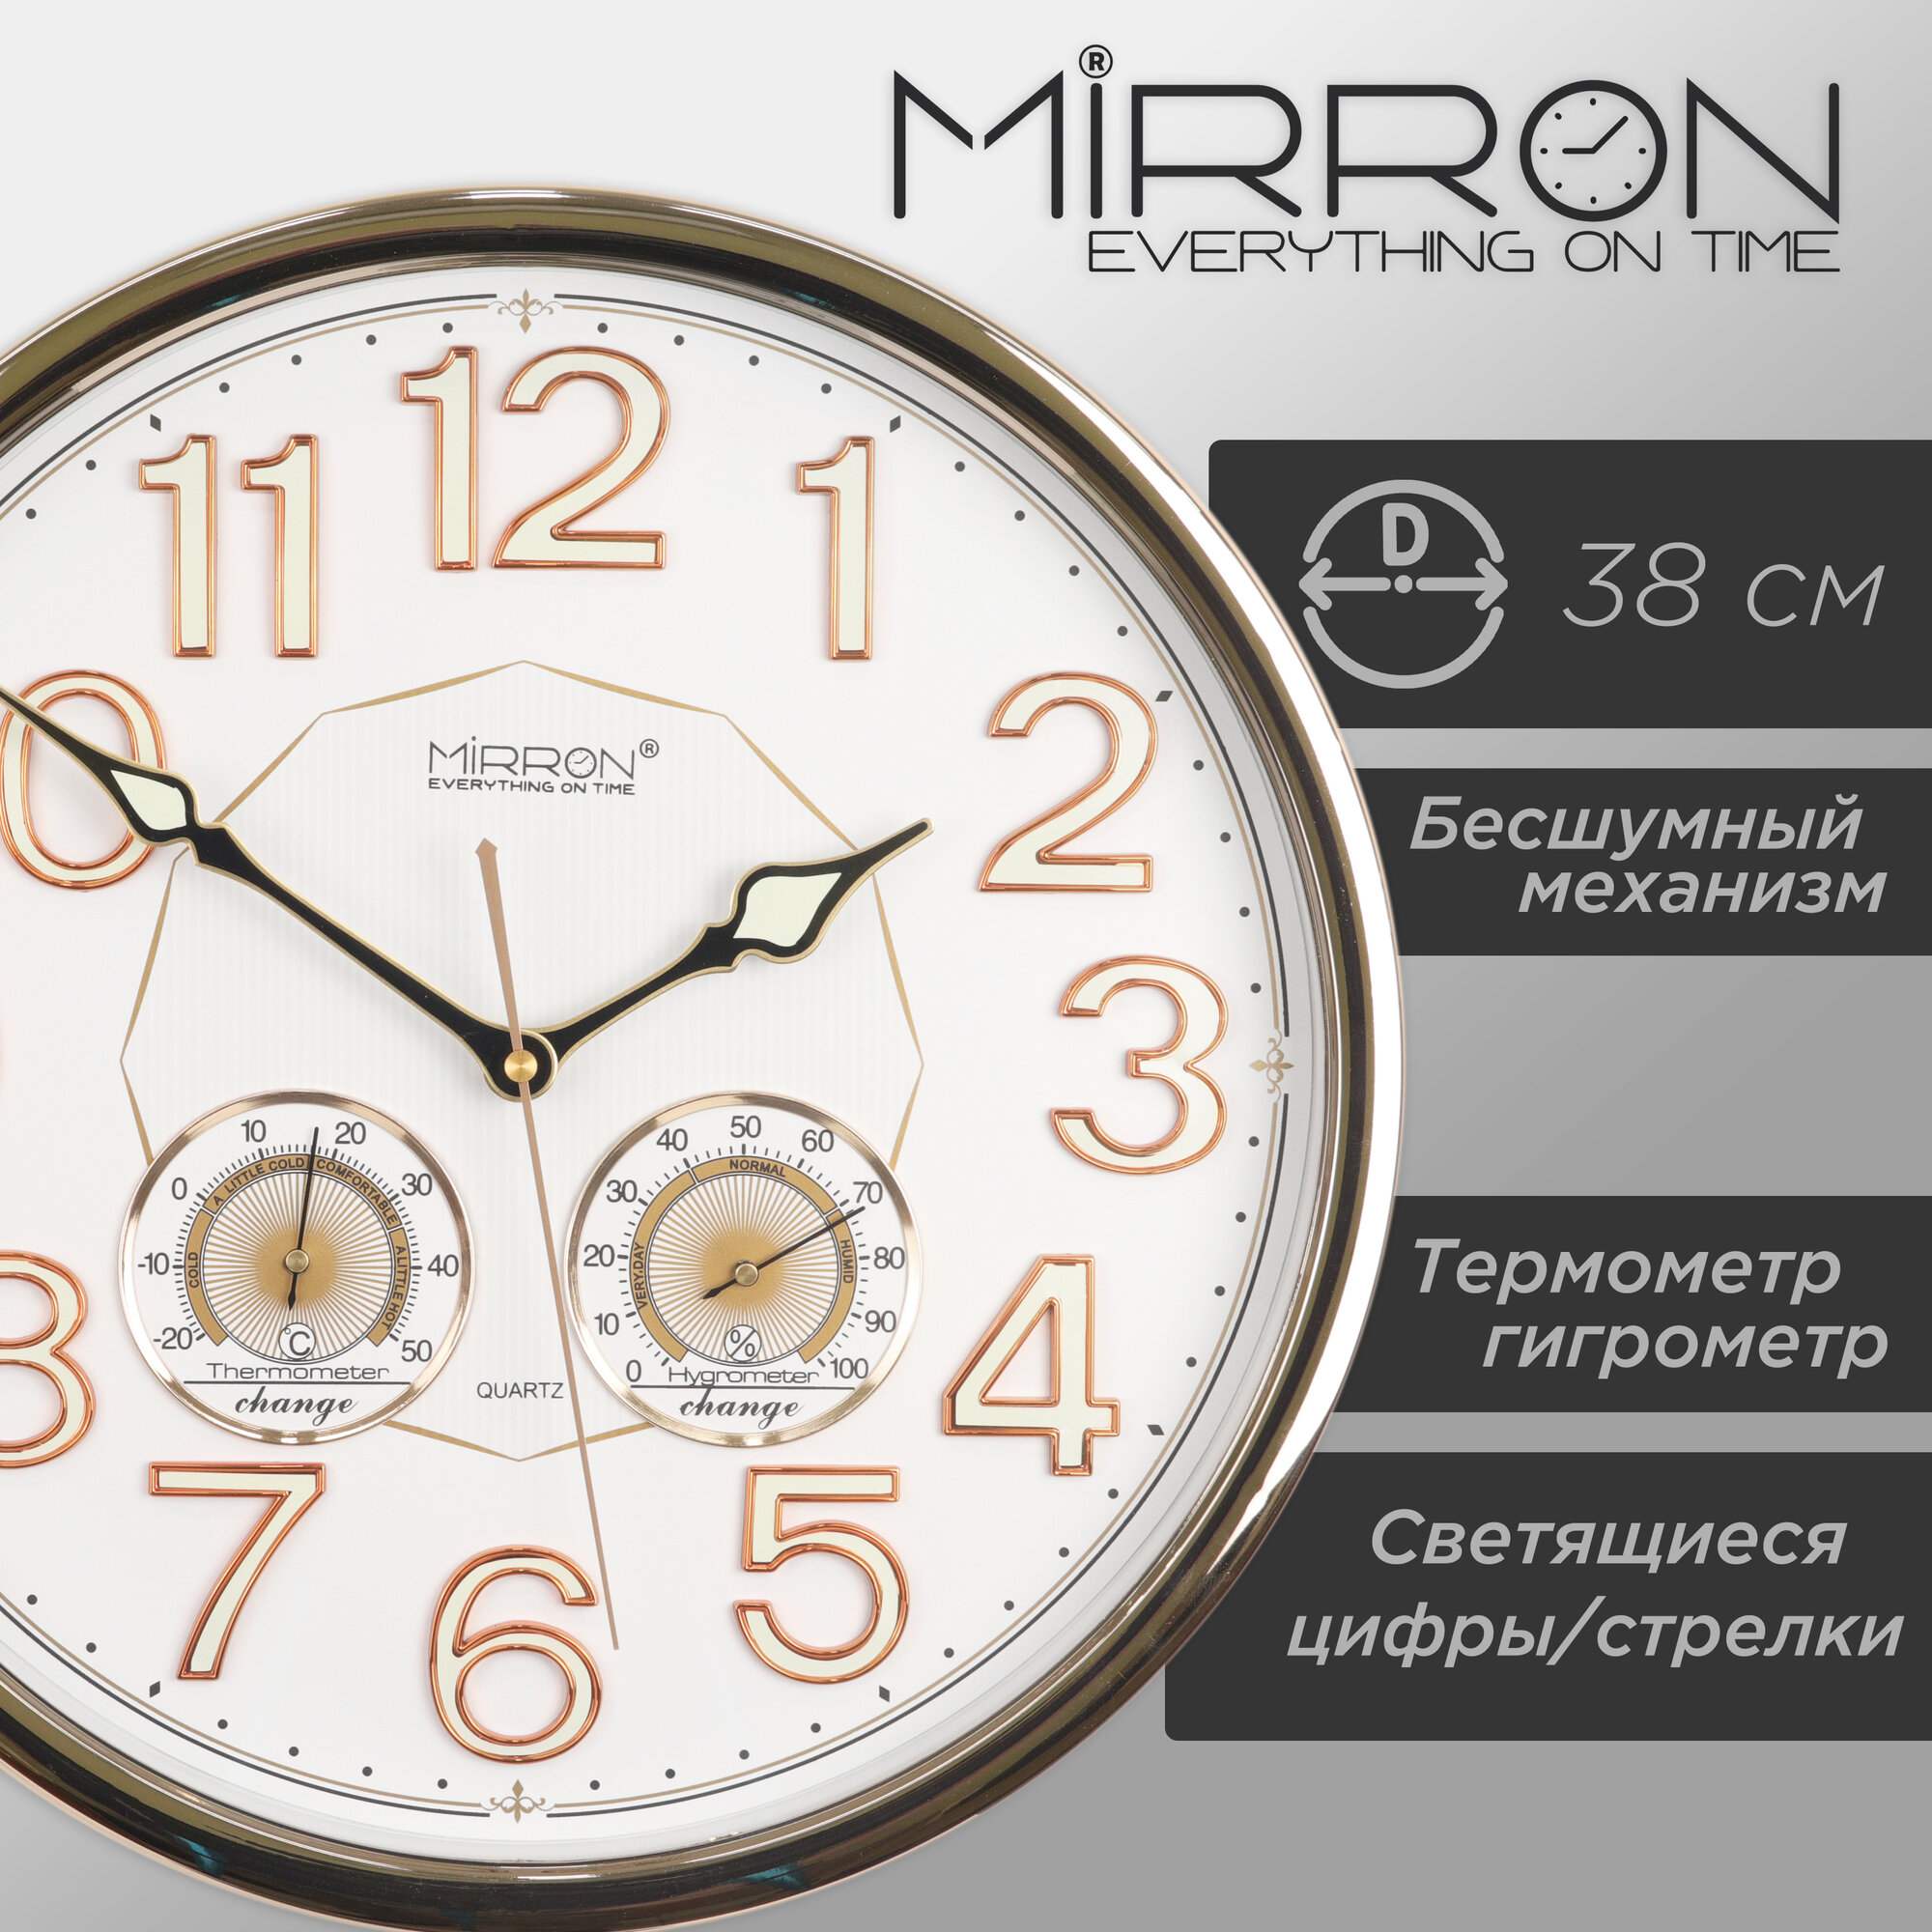 Настенные кварцевые часы MIRRON P3030BM ЗМБ/Большие круглые часы/38 см/Белый (светлый) циферблат/Светящиеся цифры и стрелки/Золотистый цвет корпуса/Термометр и гигрометр/Бесшумный плавный механизм